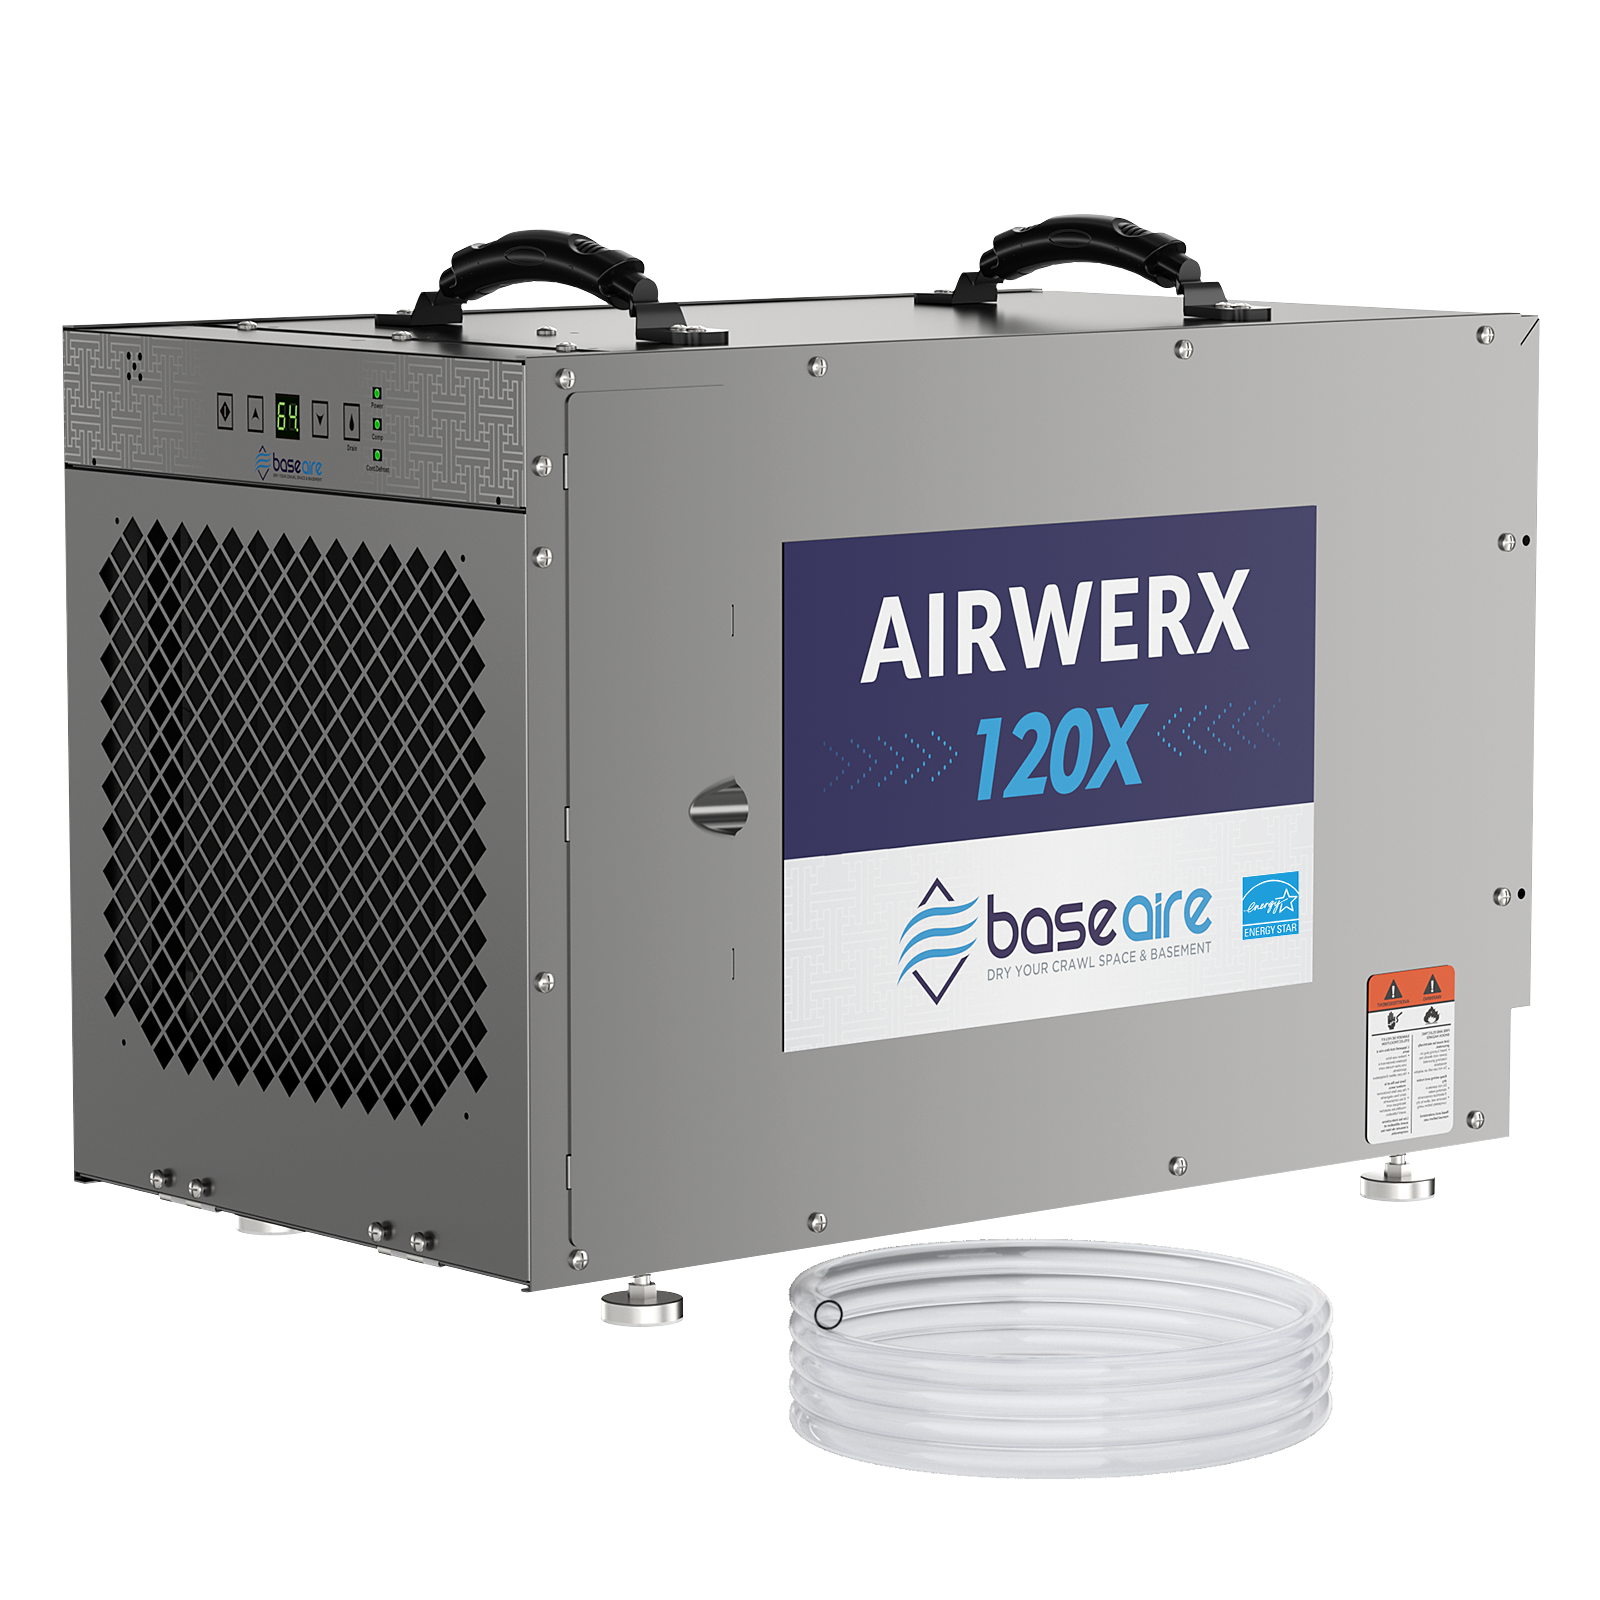 BaseAire® AirWerx 120X Dehumidifier